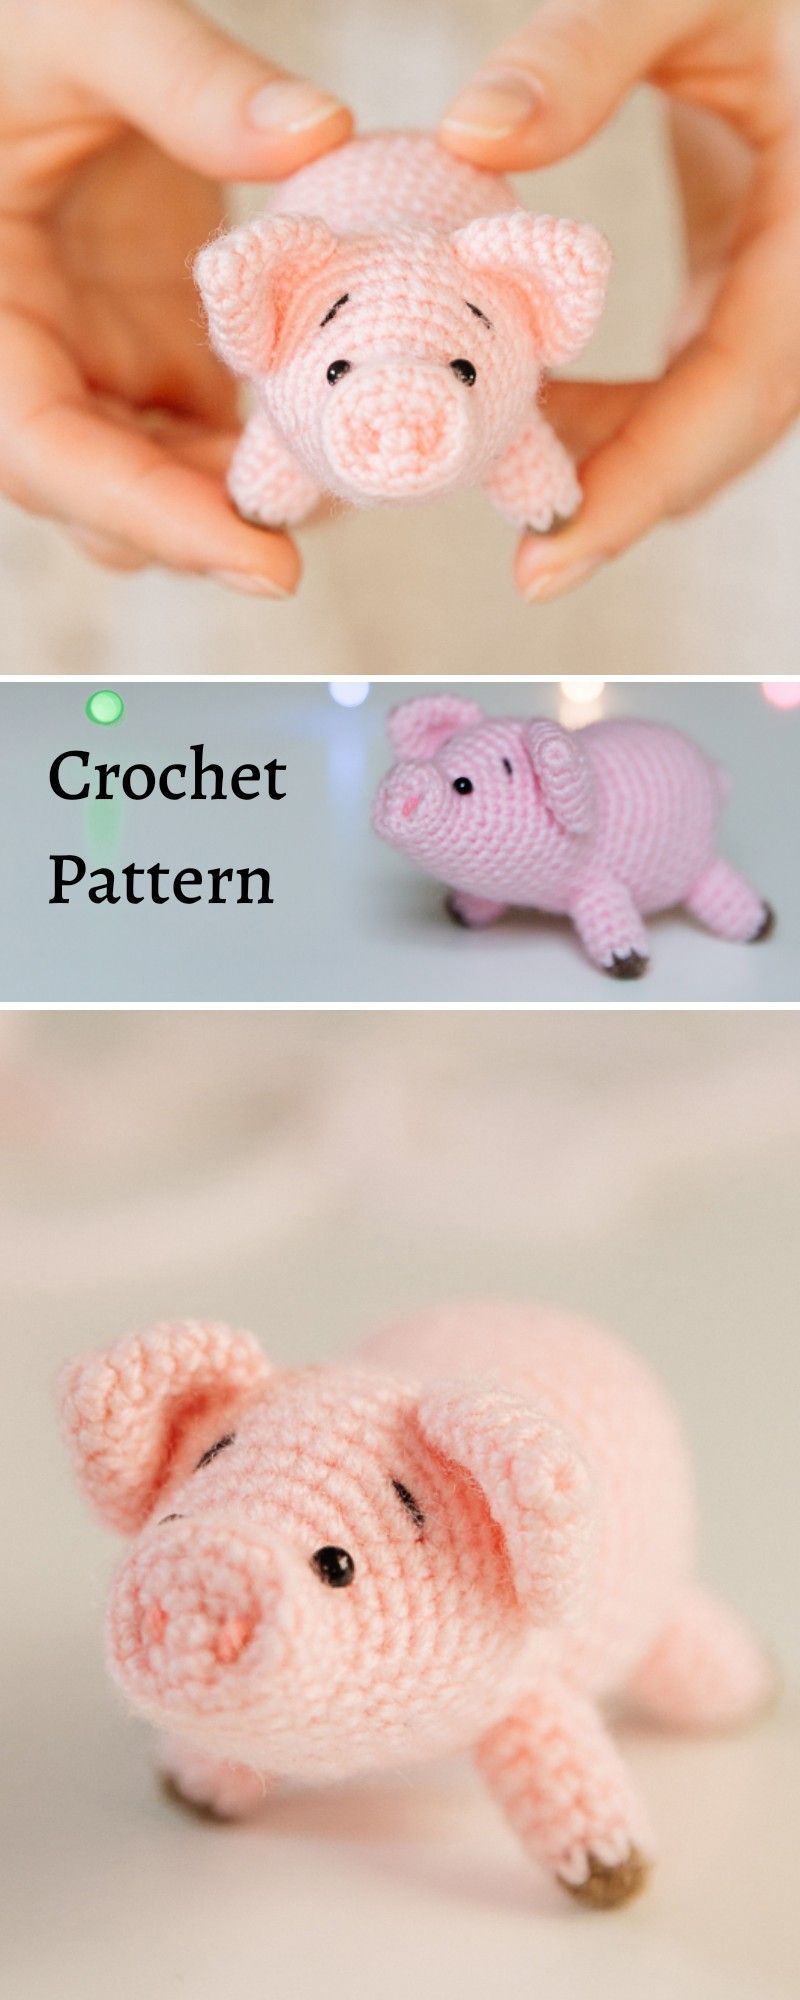 Crochet pattern pig/ amigurumi pattern pig/ Crochet tutorial | Etsy in